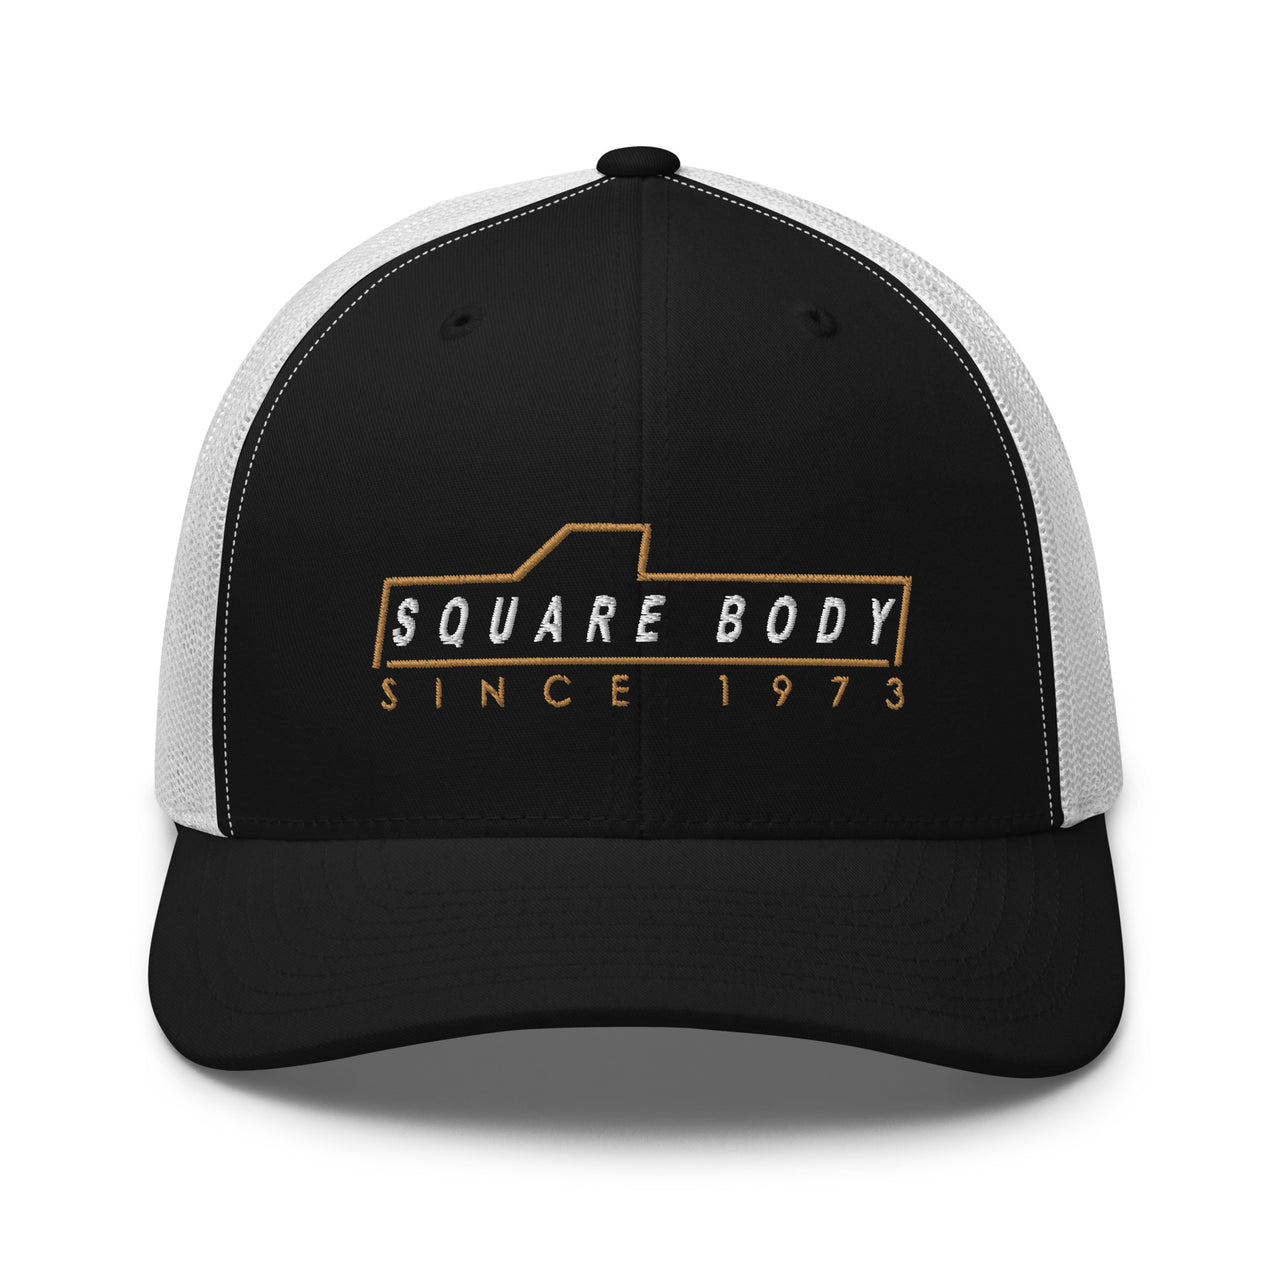 3/4 view of square body trucker hat in black and white - Aggressive Thread Auto Apparel